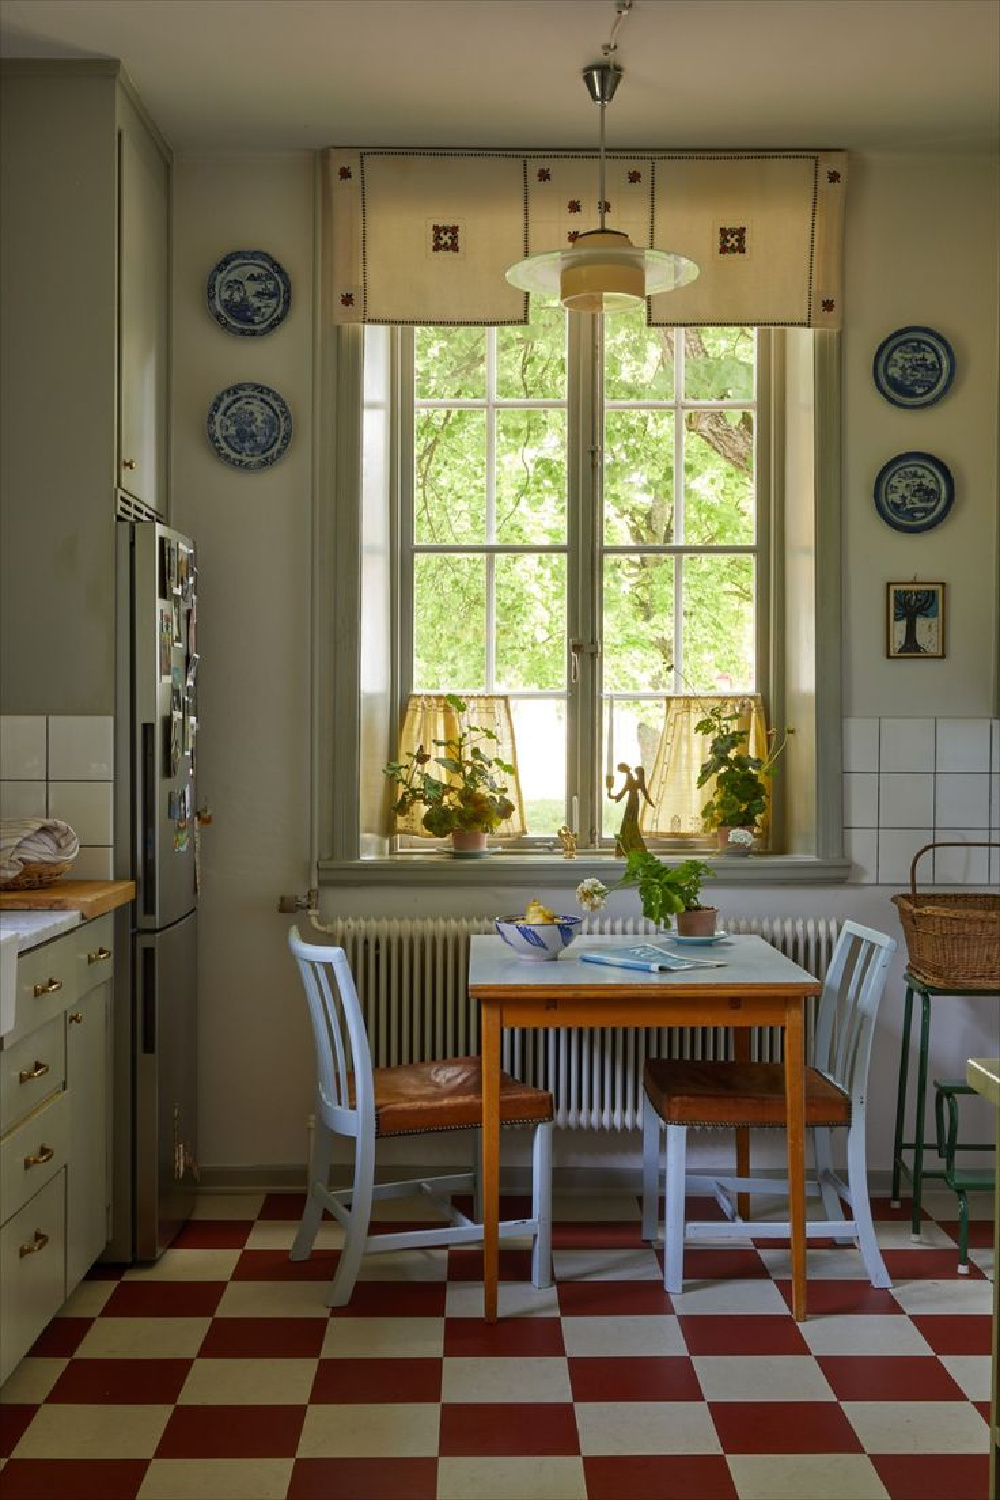 Beata Heuman's own Swedish farmhouse kitchen with checkered floor.